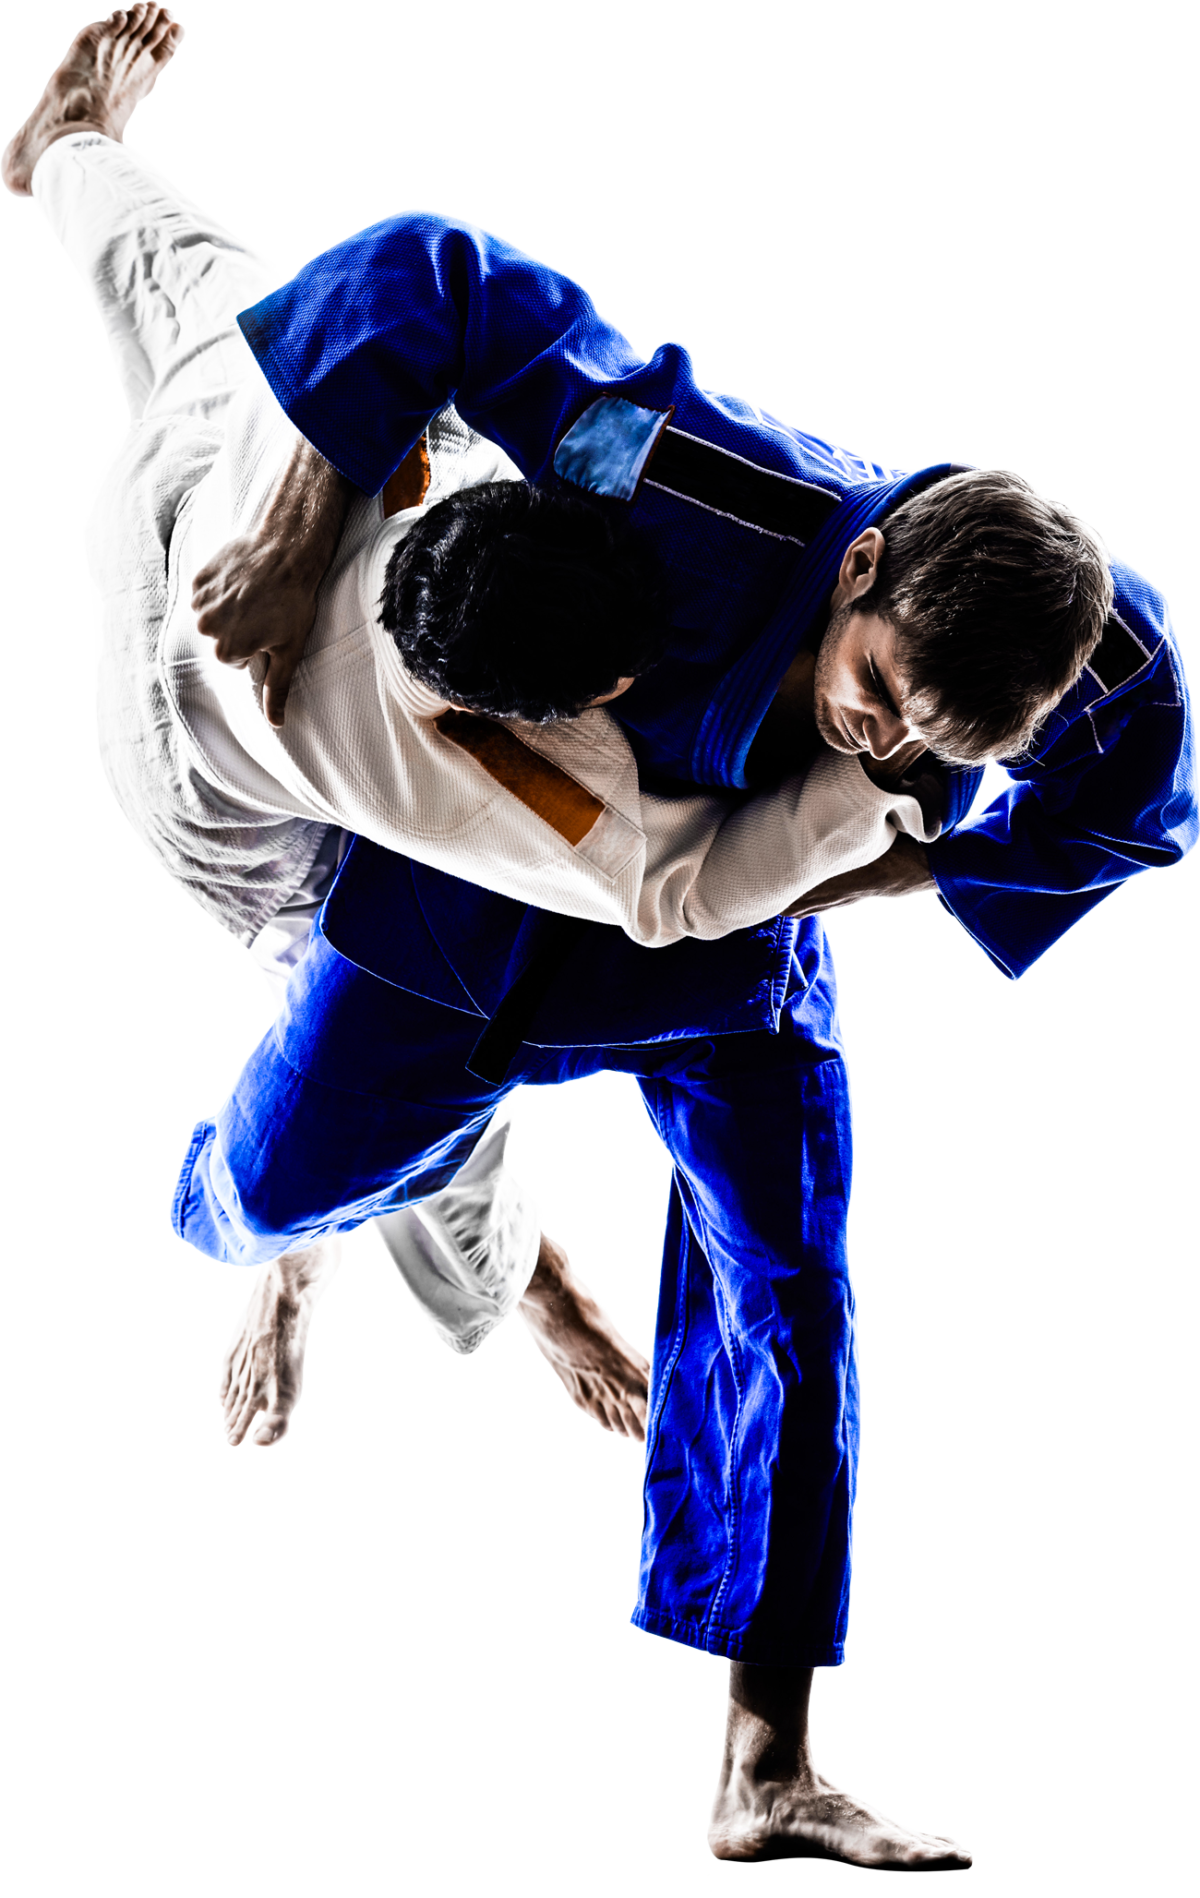 prise de judo